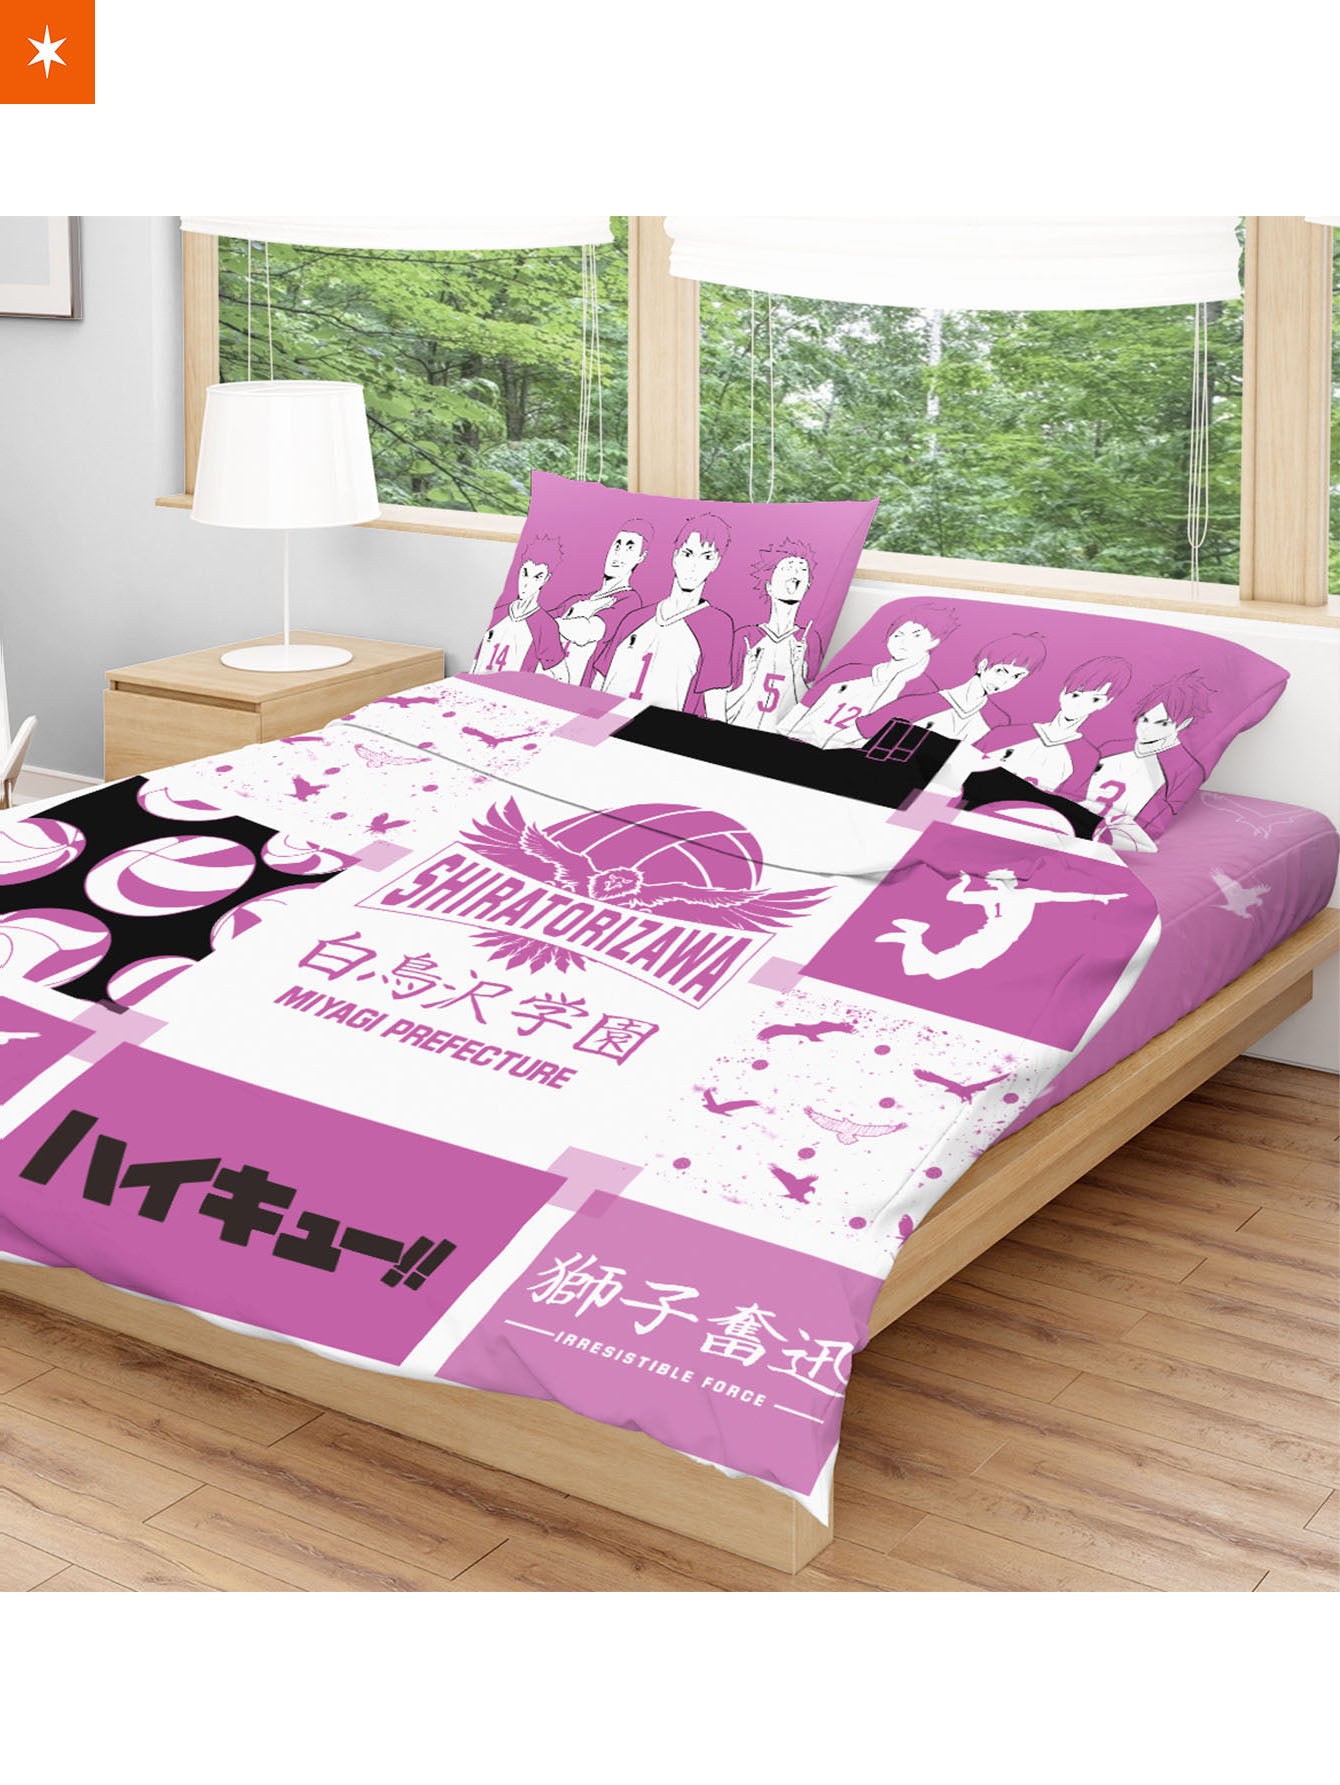 Shiratorizawa Cozy Bedding Set